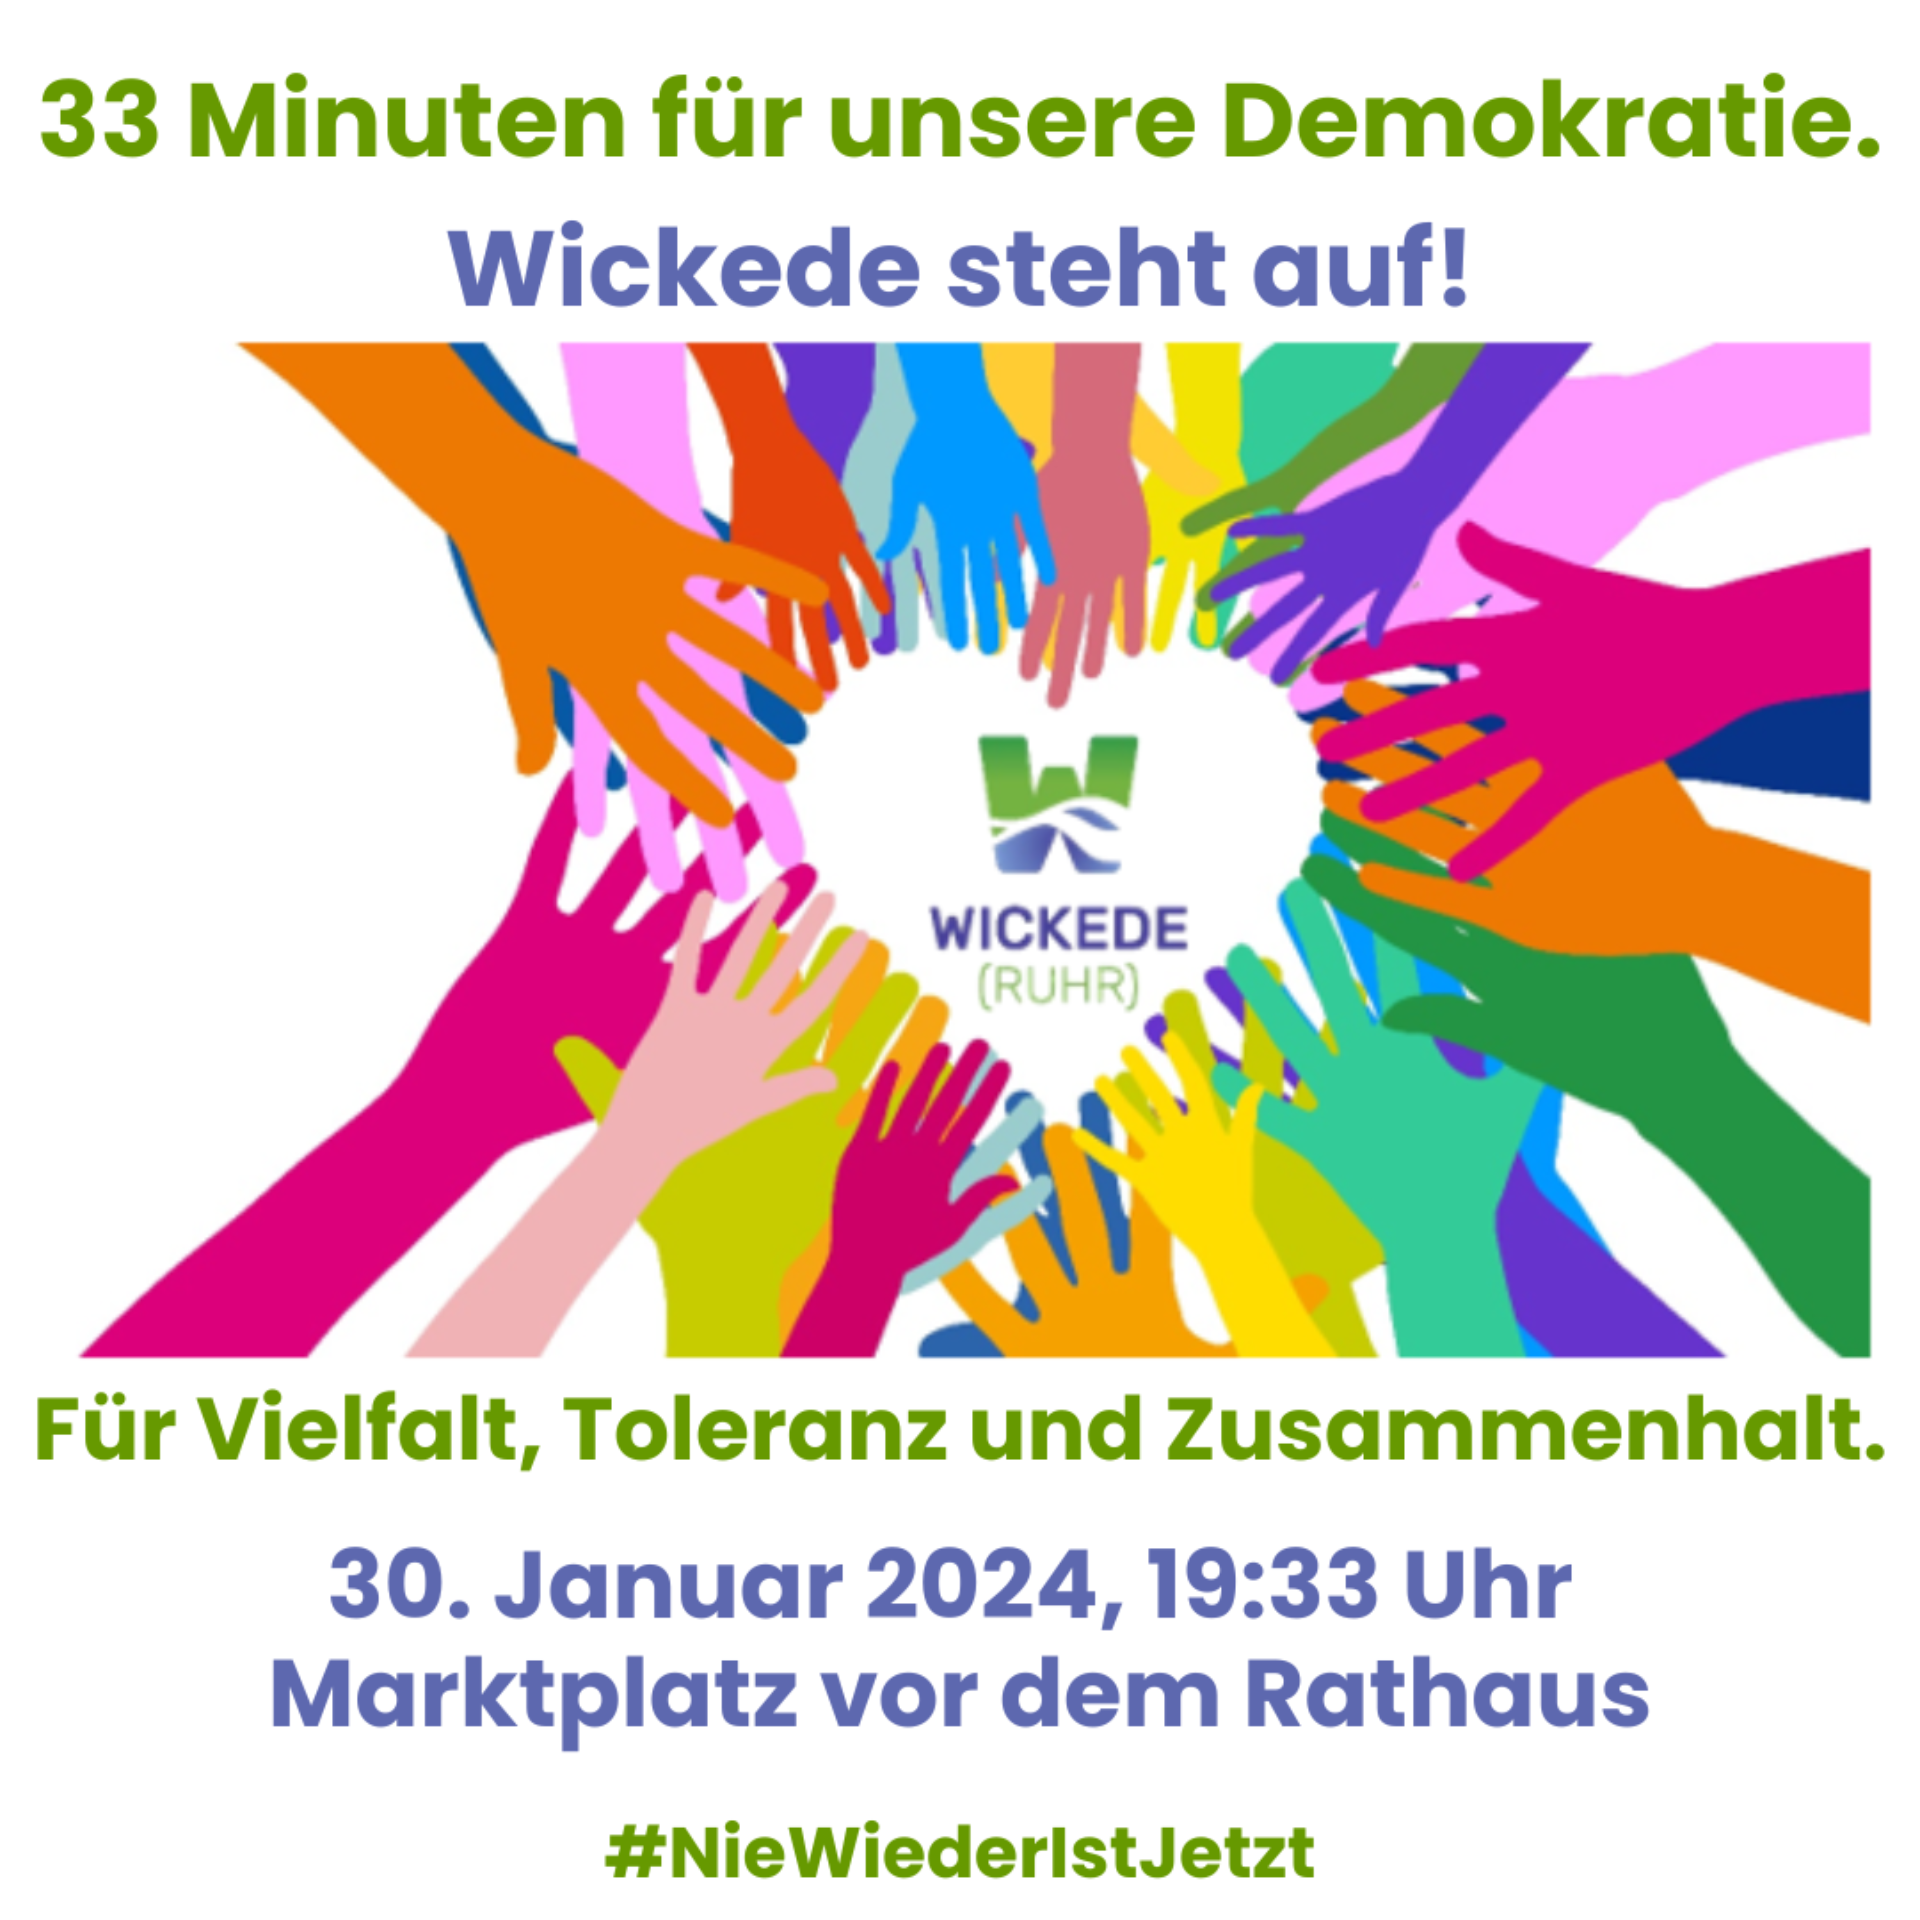 Blogbeitrag - 33 Minuten für unsere Demokratie - Demo gegen rechts